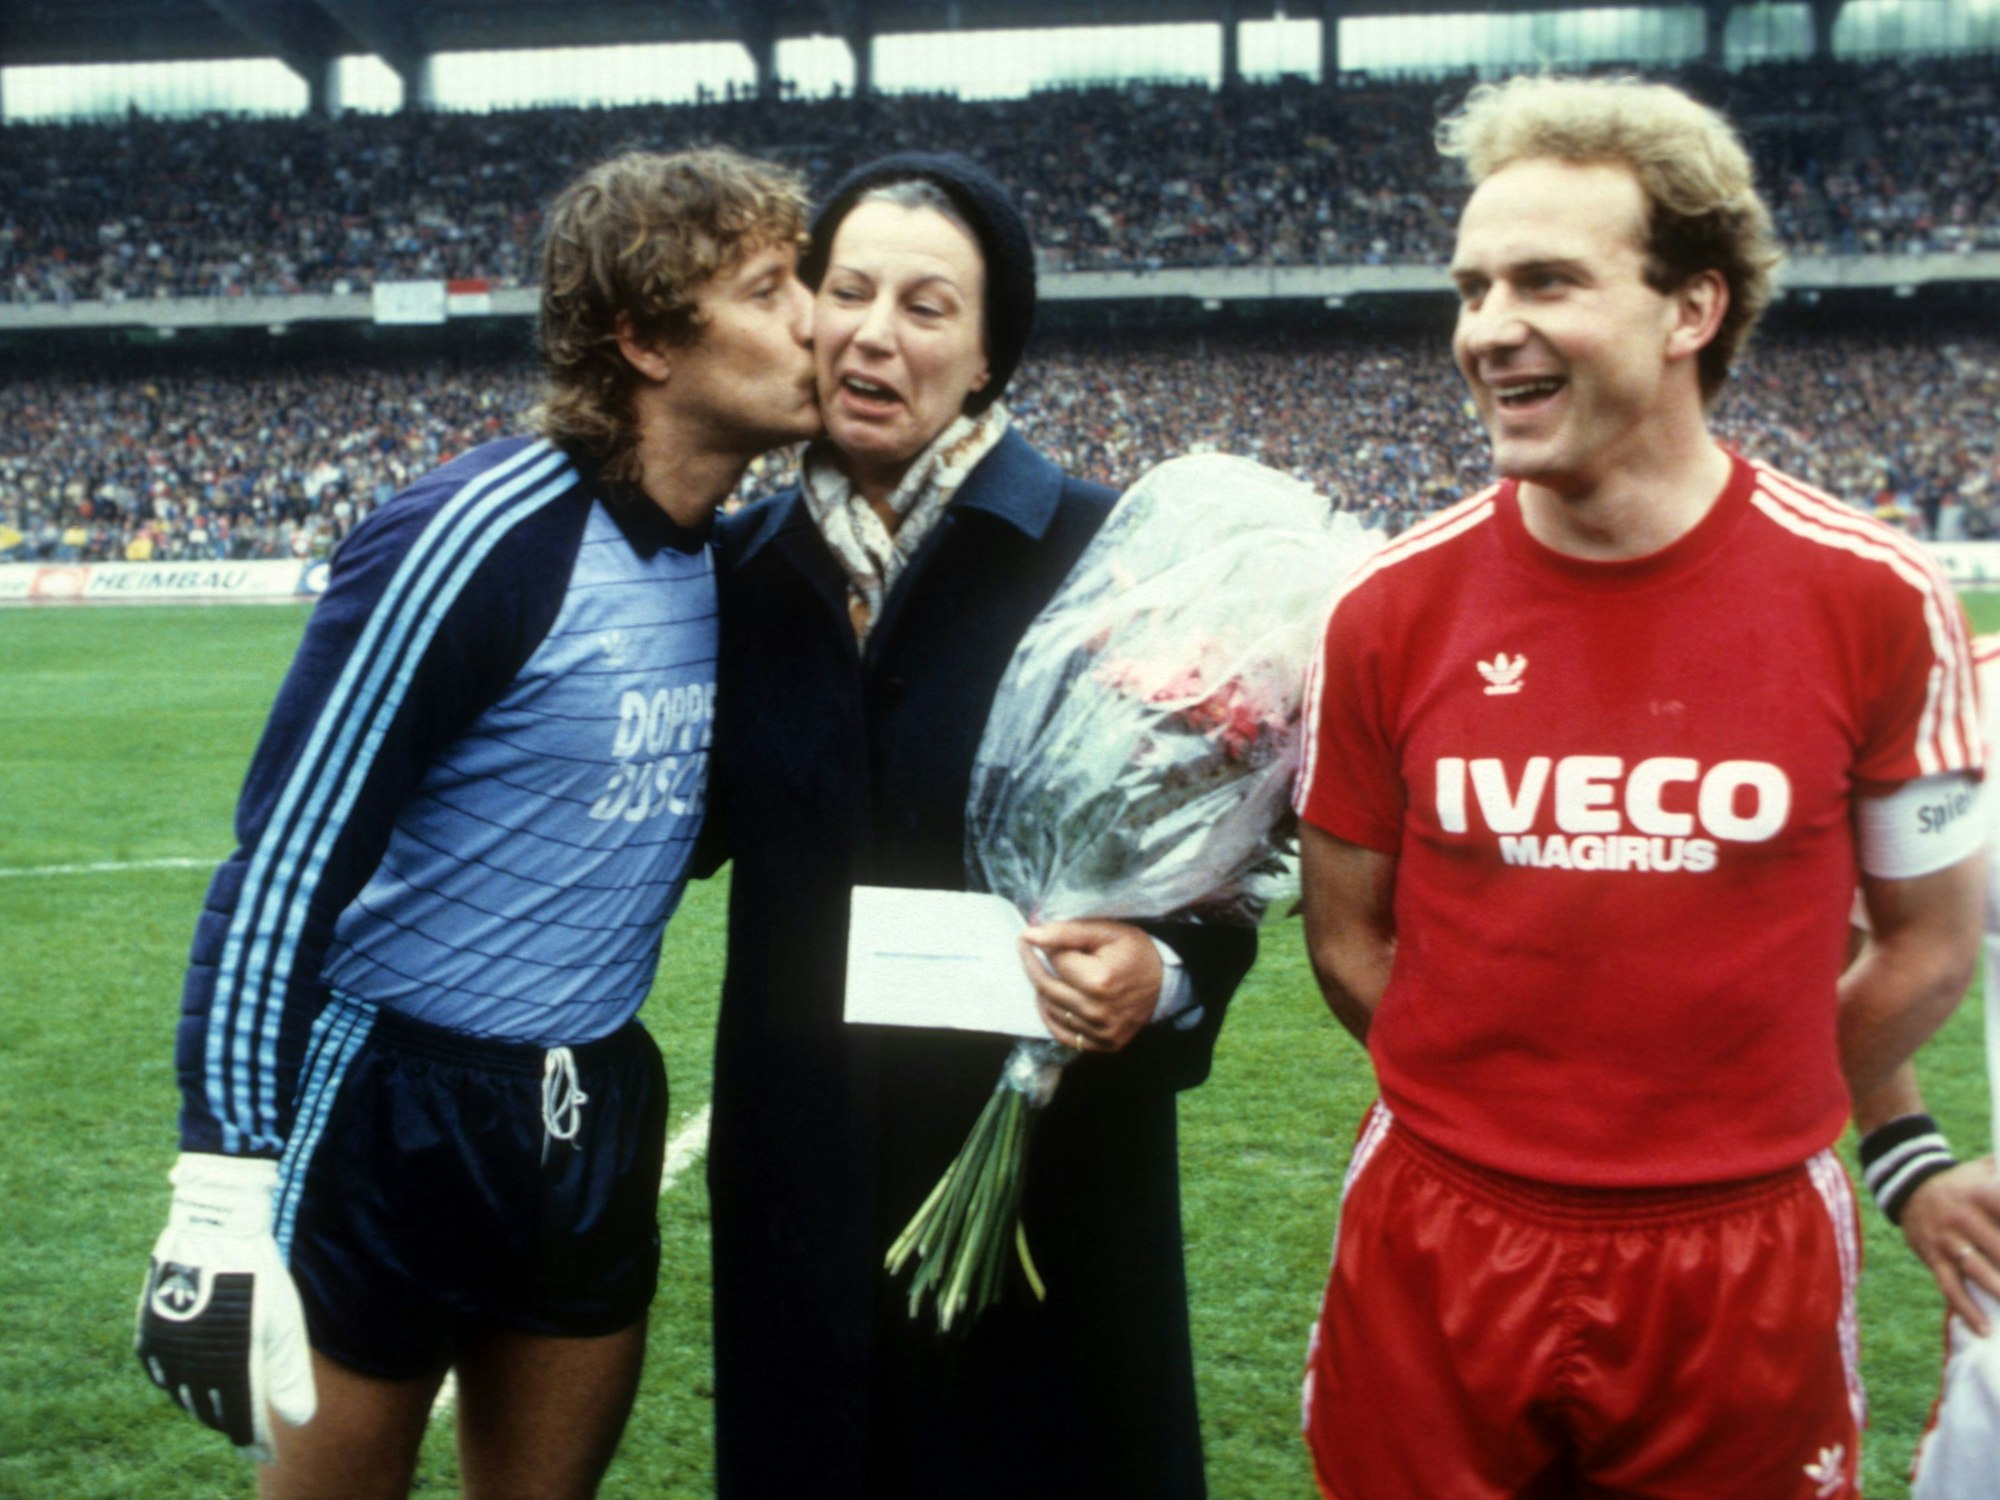 Toni Schumacher gibt Mildrer Scheel einen Kuss auf die Wange. Rechts daneben lacht Karl-Heinz Rummenigge vom FC Bayern München.